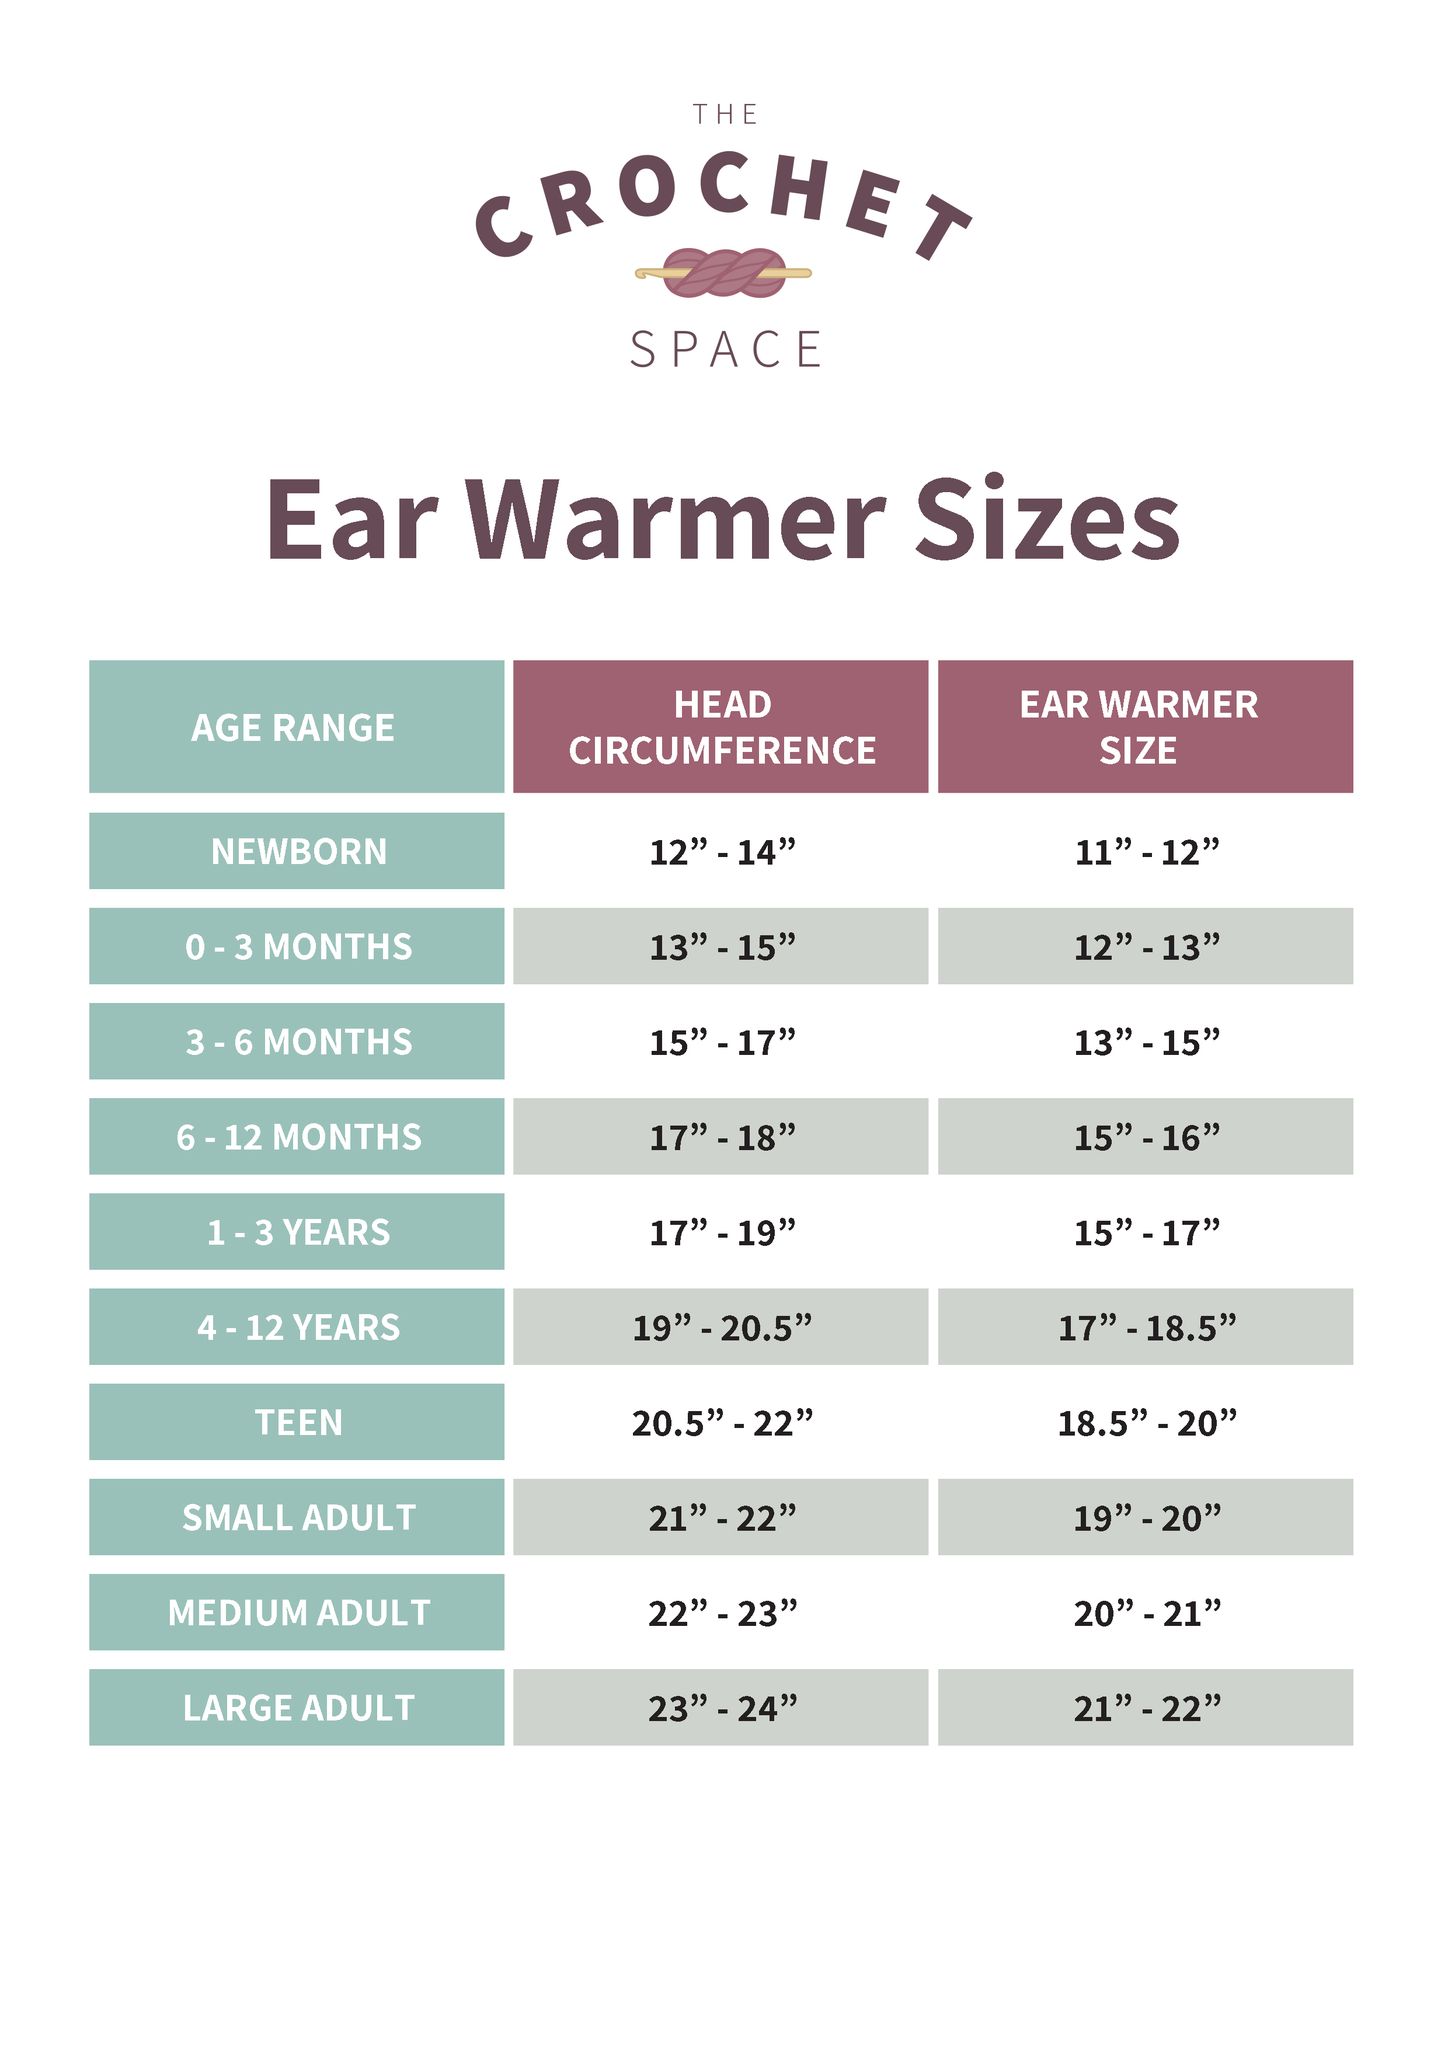 Ear Warmer sizes